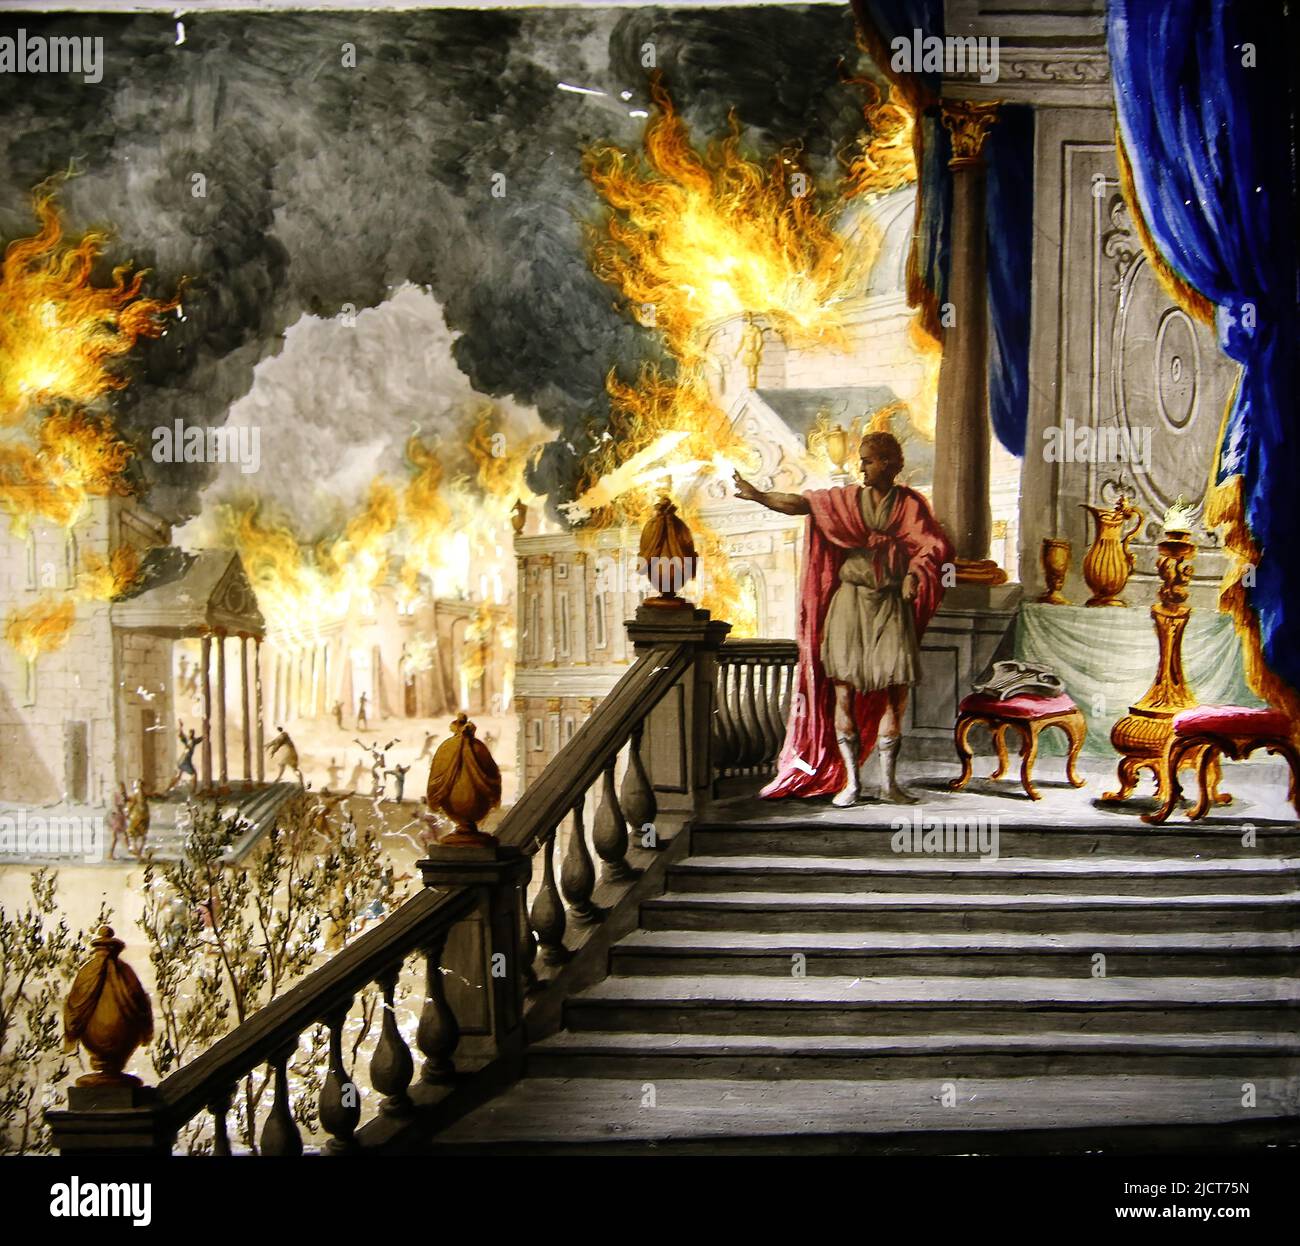 Lanternes magiques. 19th siècle. L'empereur Néron contemplant le feu de Rome, 18 juillet, 64. (peinture de verre). Rijksmuseum, Amsterdam, pays-Bas. Banque D'Images